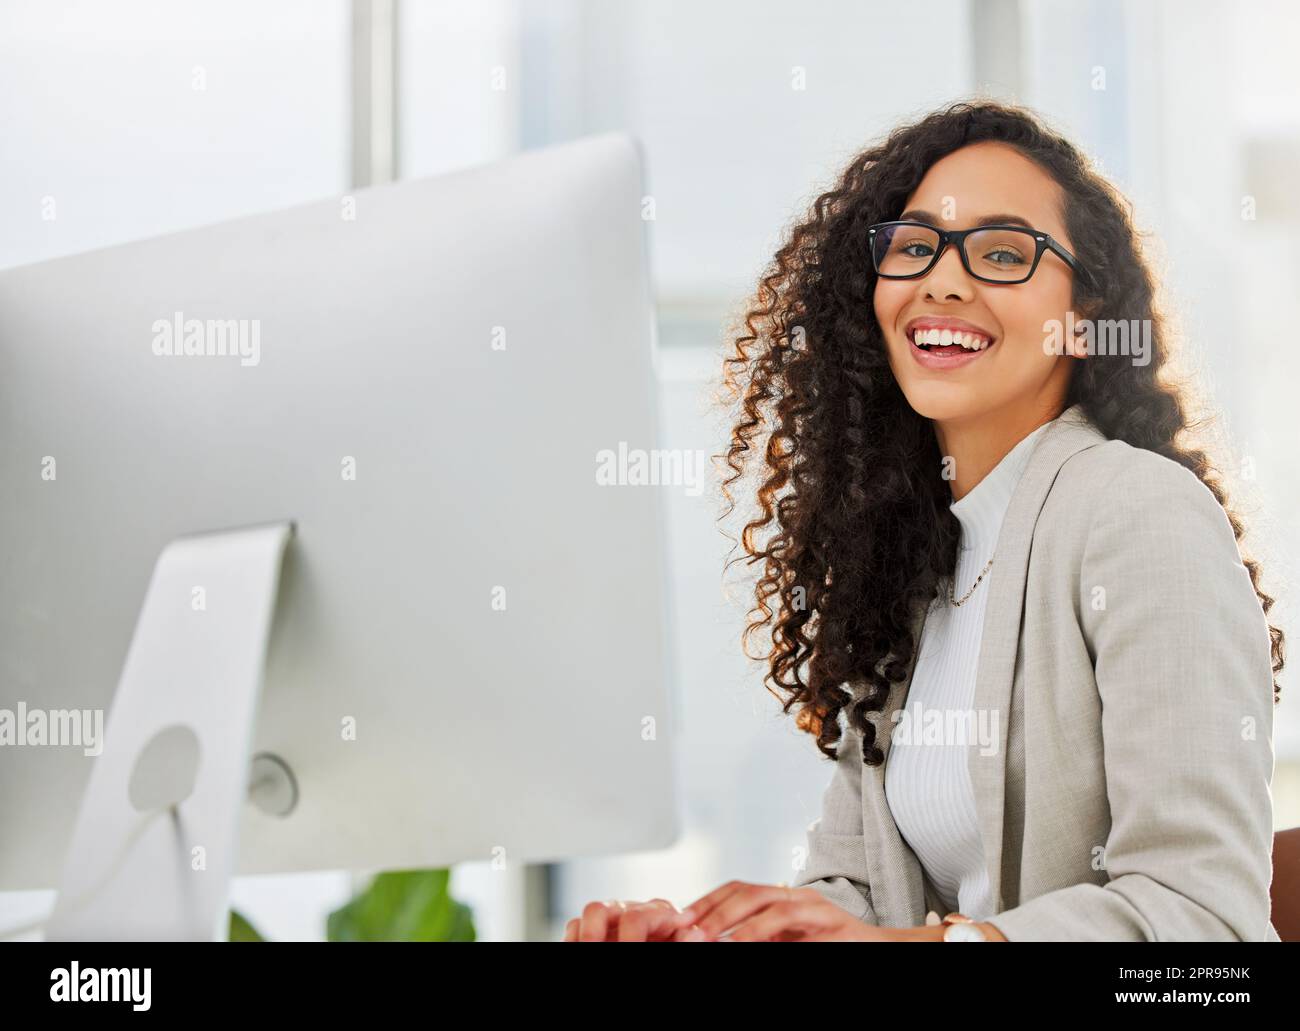 Meine Erfolge halten mich für mehr motiviert. Porträt einer jungen Geschäftsfrau, die in einem Büro am Computer arbeitet. Stockfoto